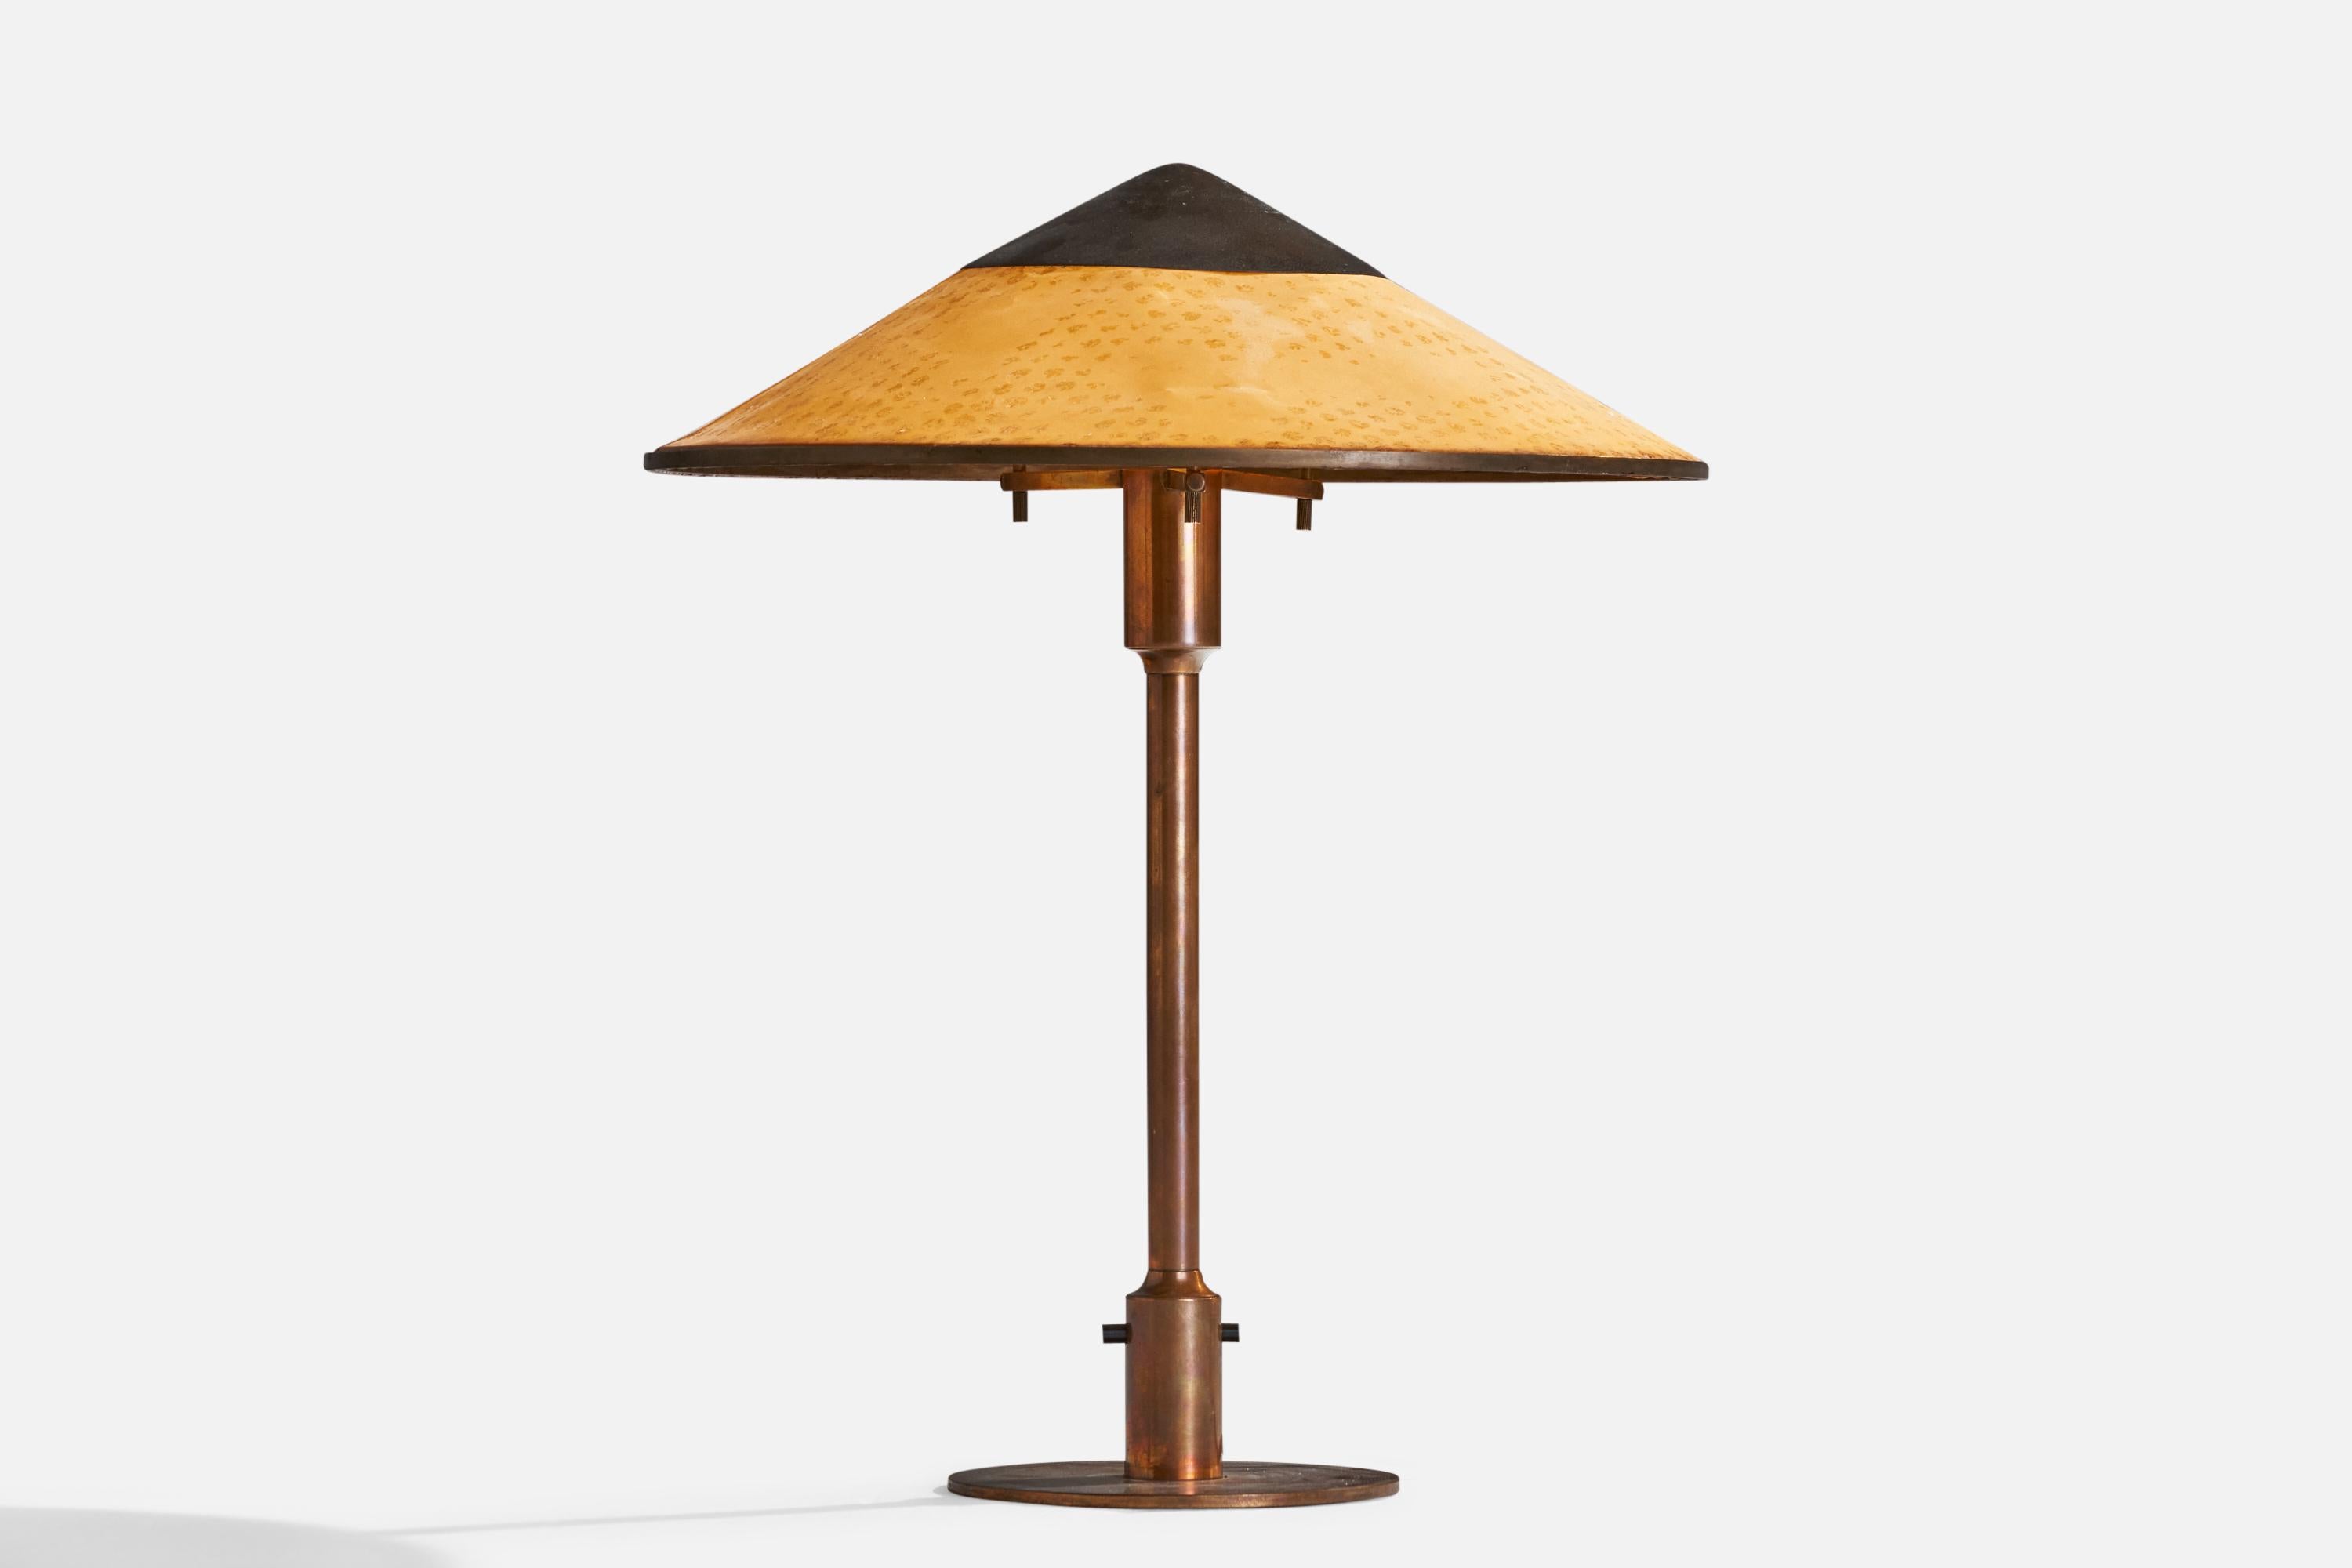 Eine Tischlampe aus Kupfer und orangefarbenem Wachspapier, entworfen und hergestellt von Niels Rasmussen Thykier, Dänemark, 1930er Jahre.

Gesamtabmessungen (Zoll): 19,5